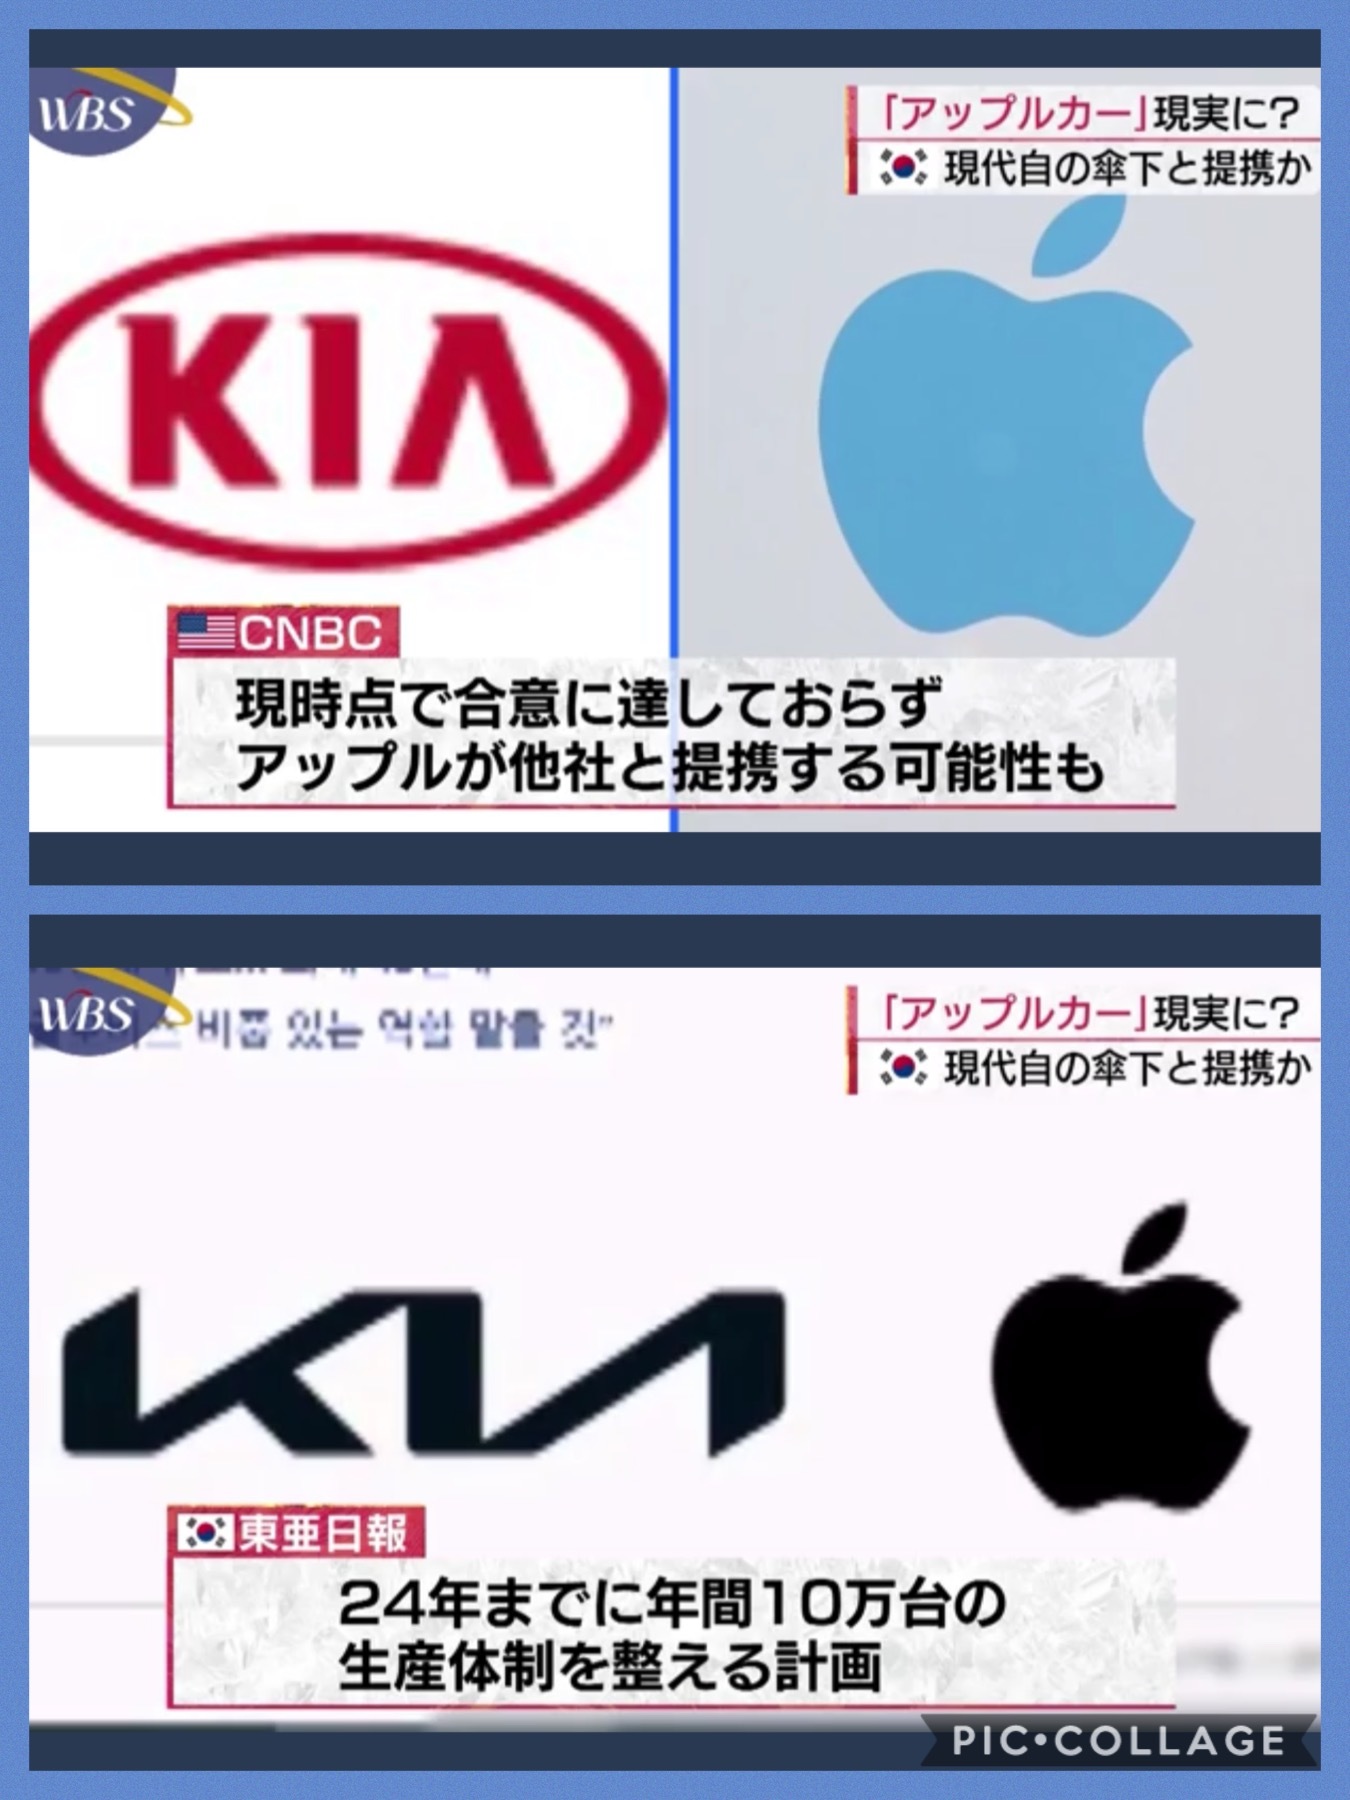 アップルカーの製造は、韓国ヒュンダイ傘下の「KIA(起亜)」にWBS